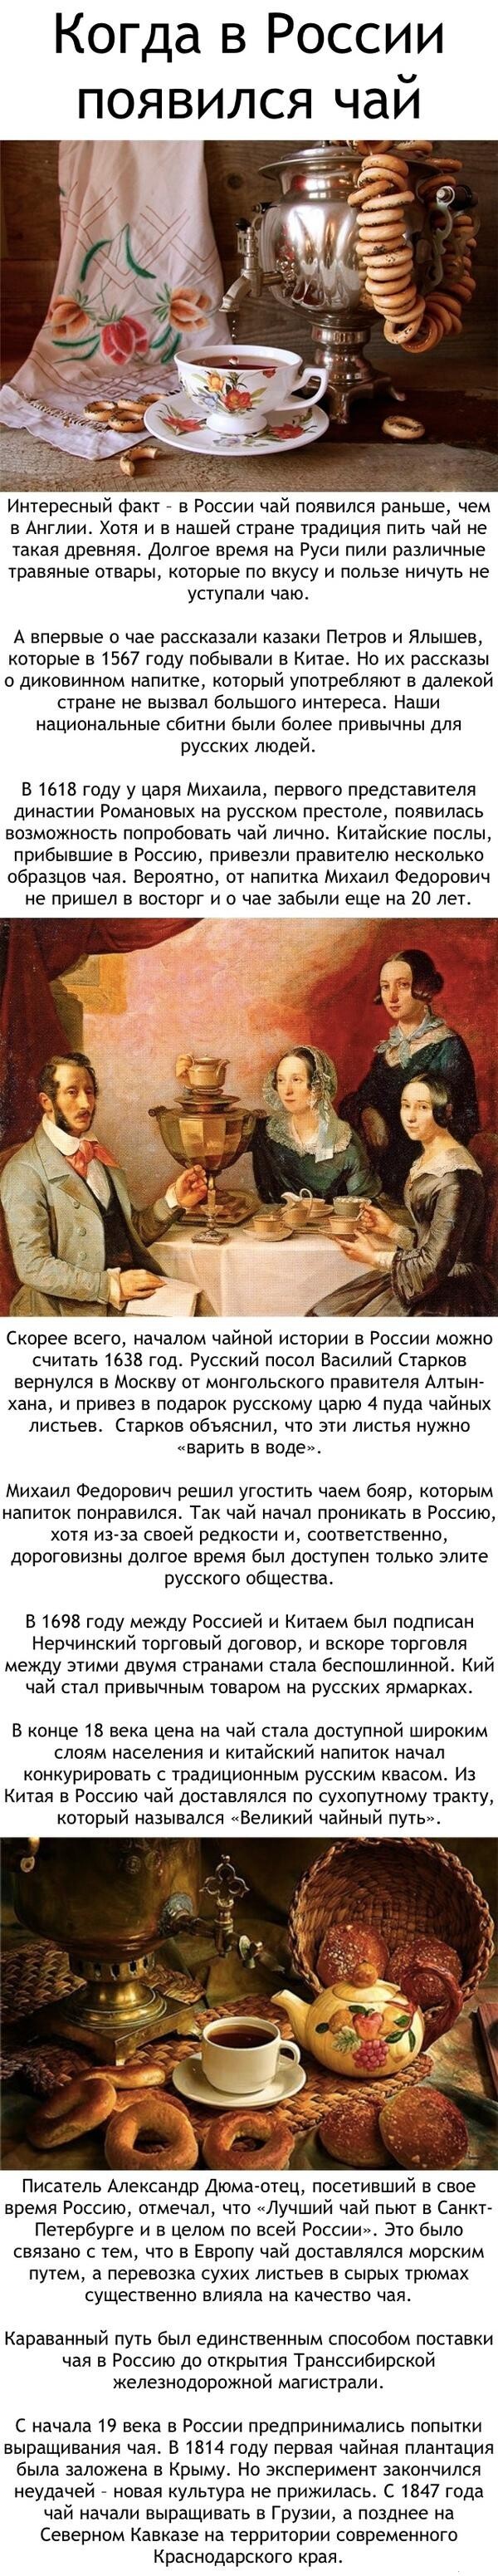 Когда в России появился чай